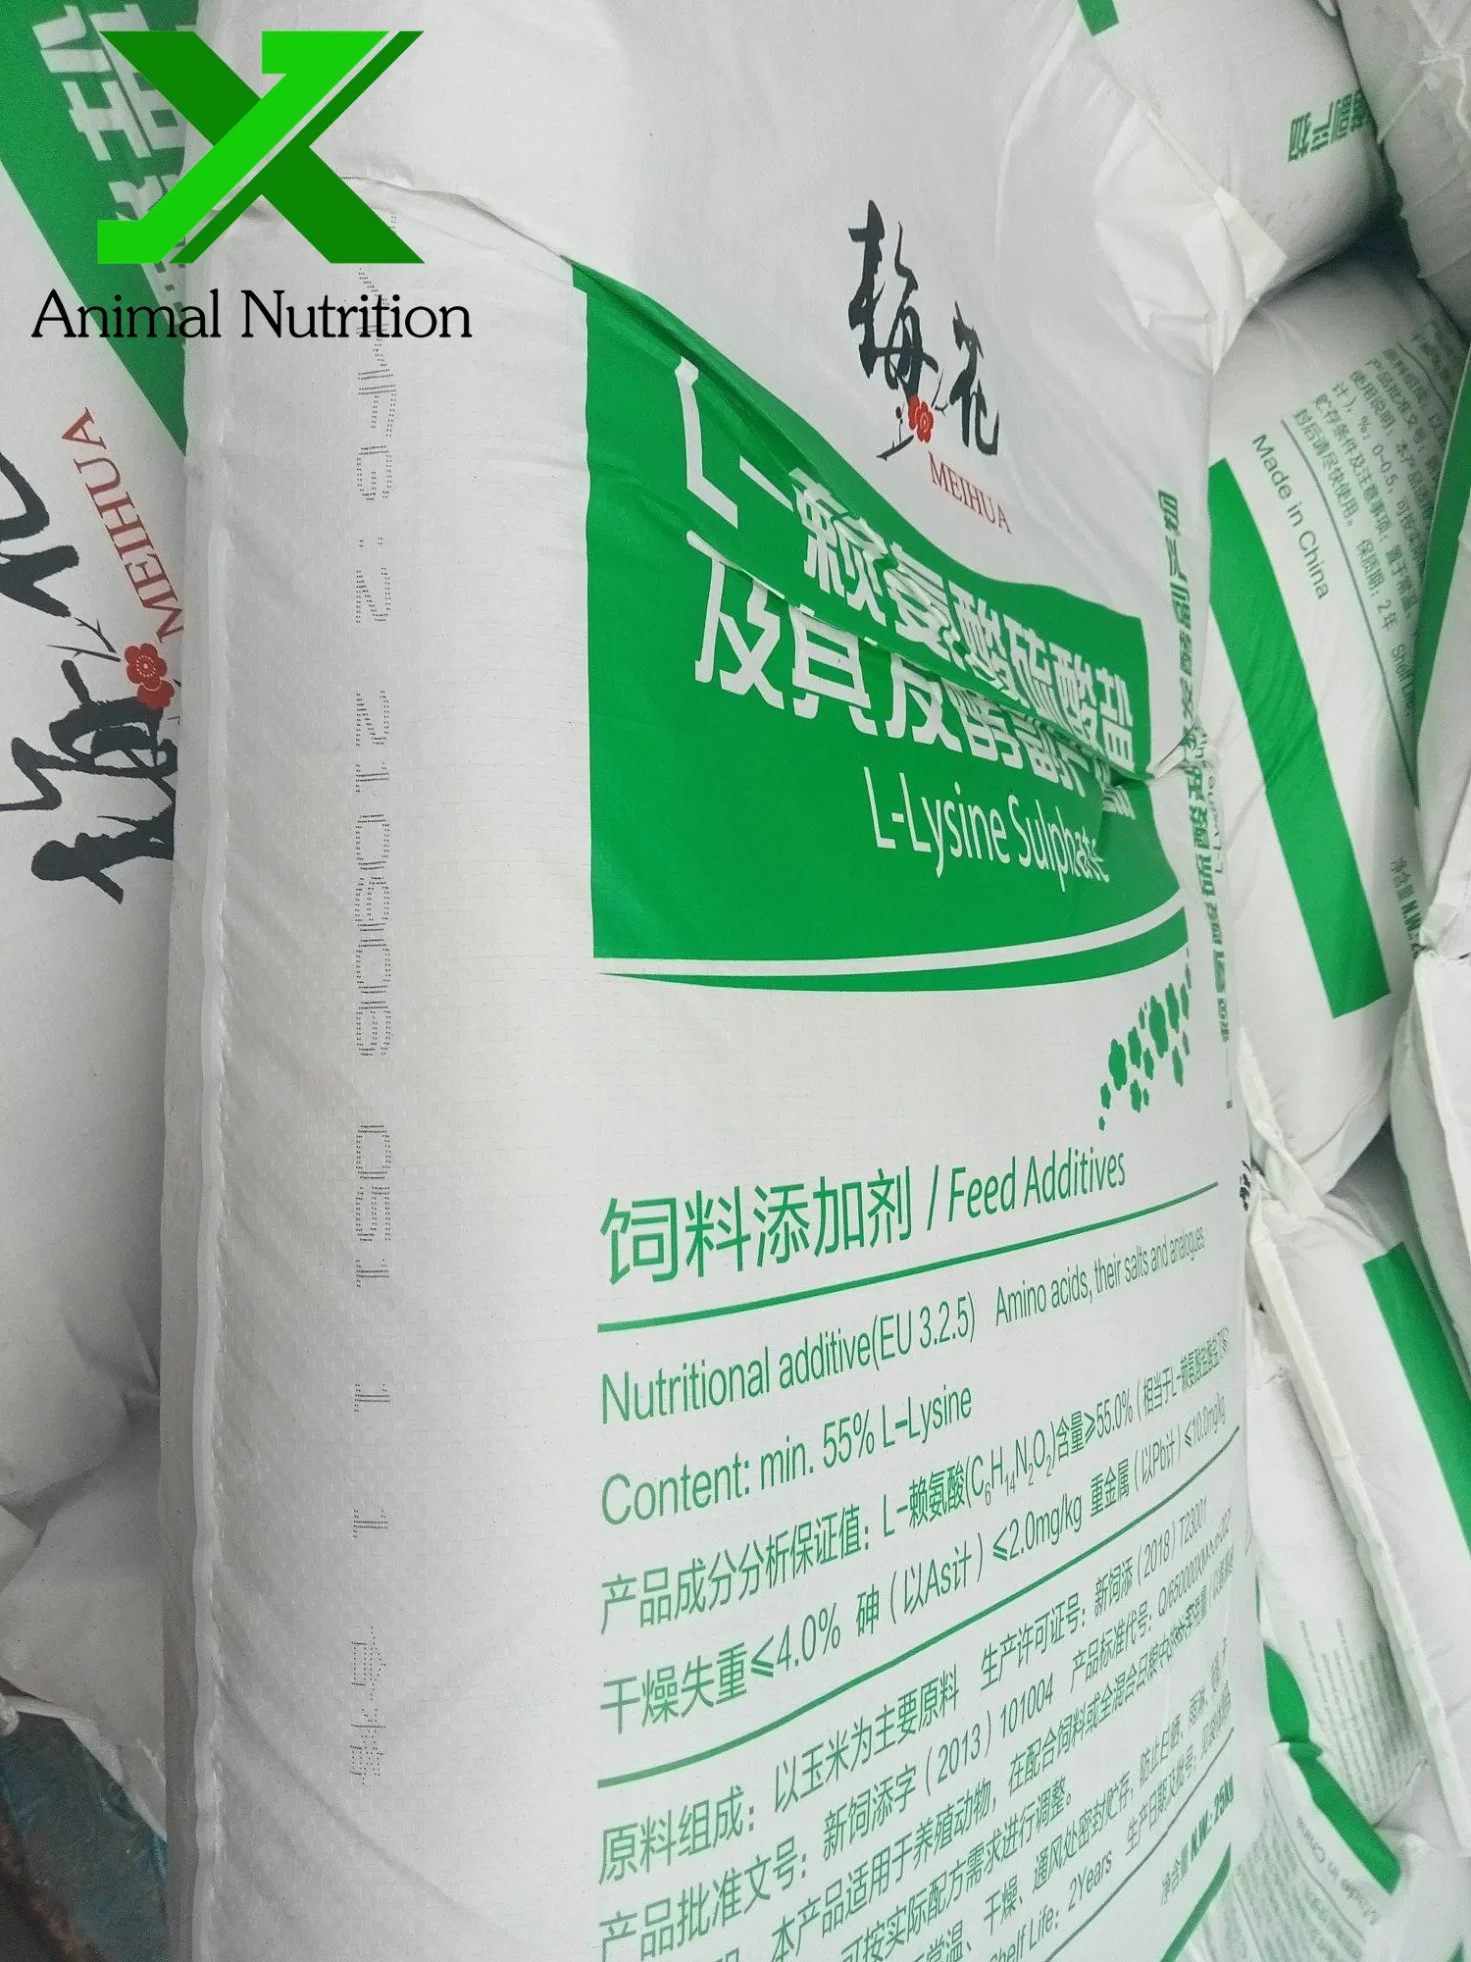 Торговая марка Meihua L лизина сульфат/сульфата 70% животных добавки для молочного скота зажигания